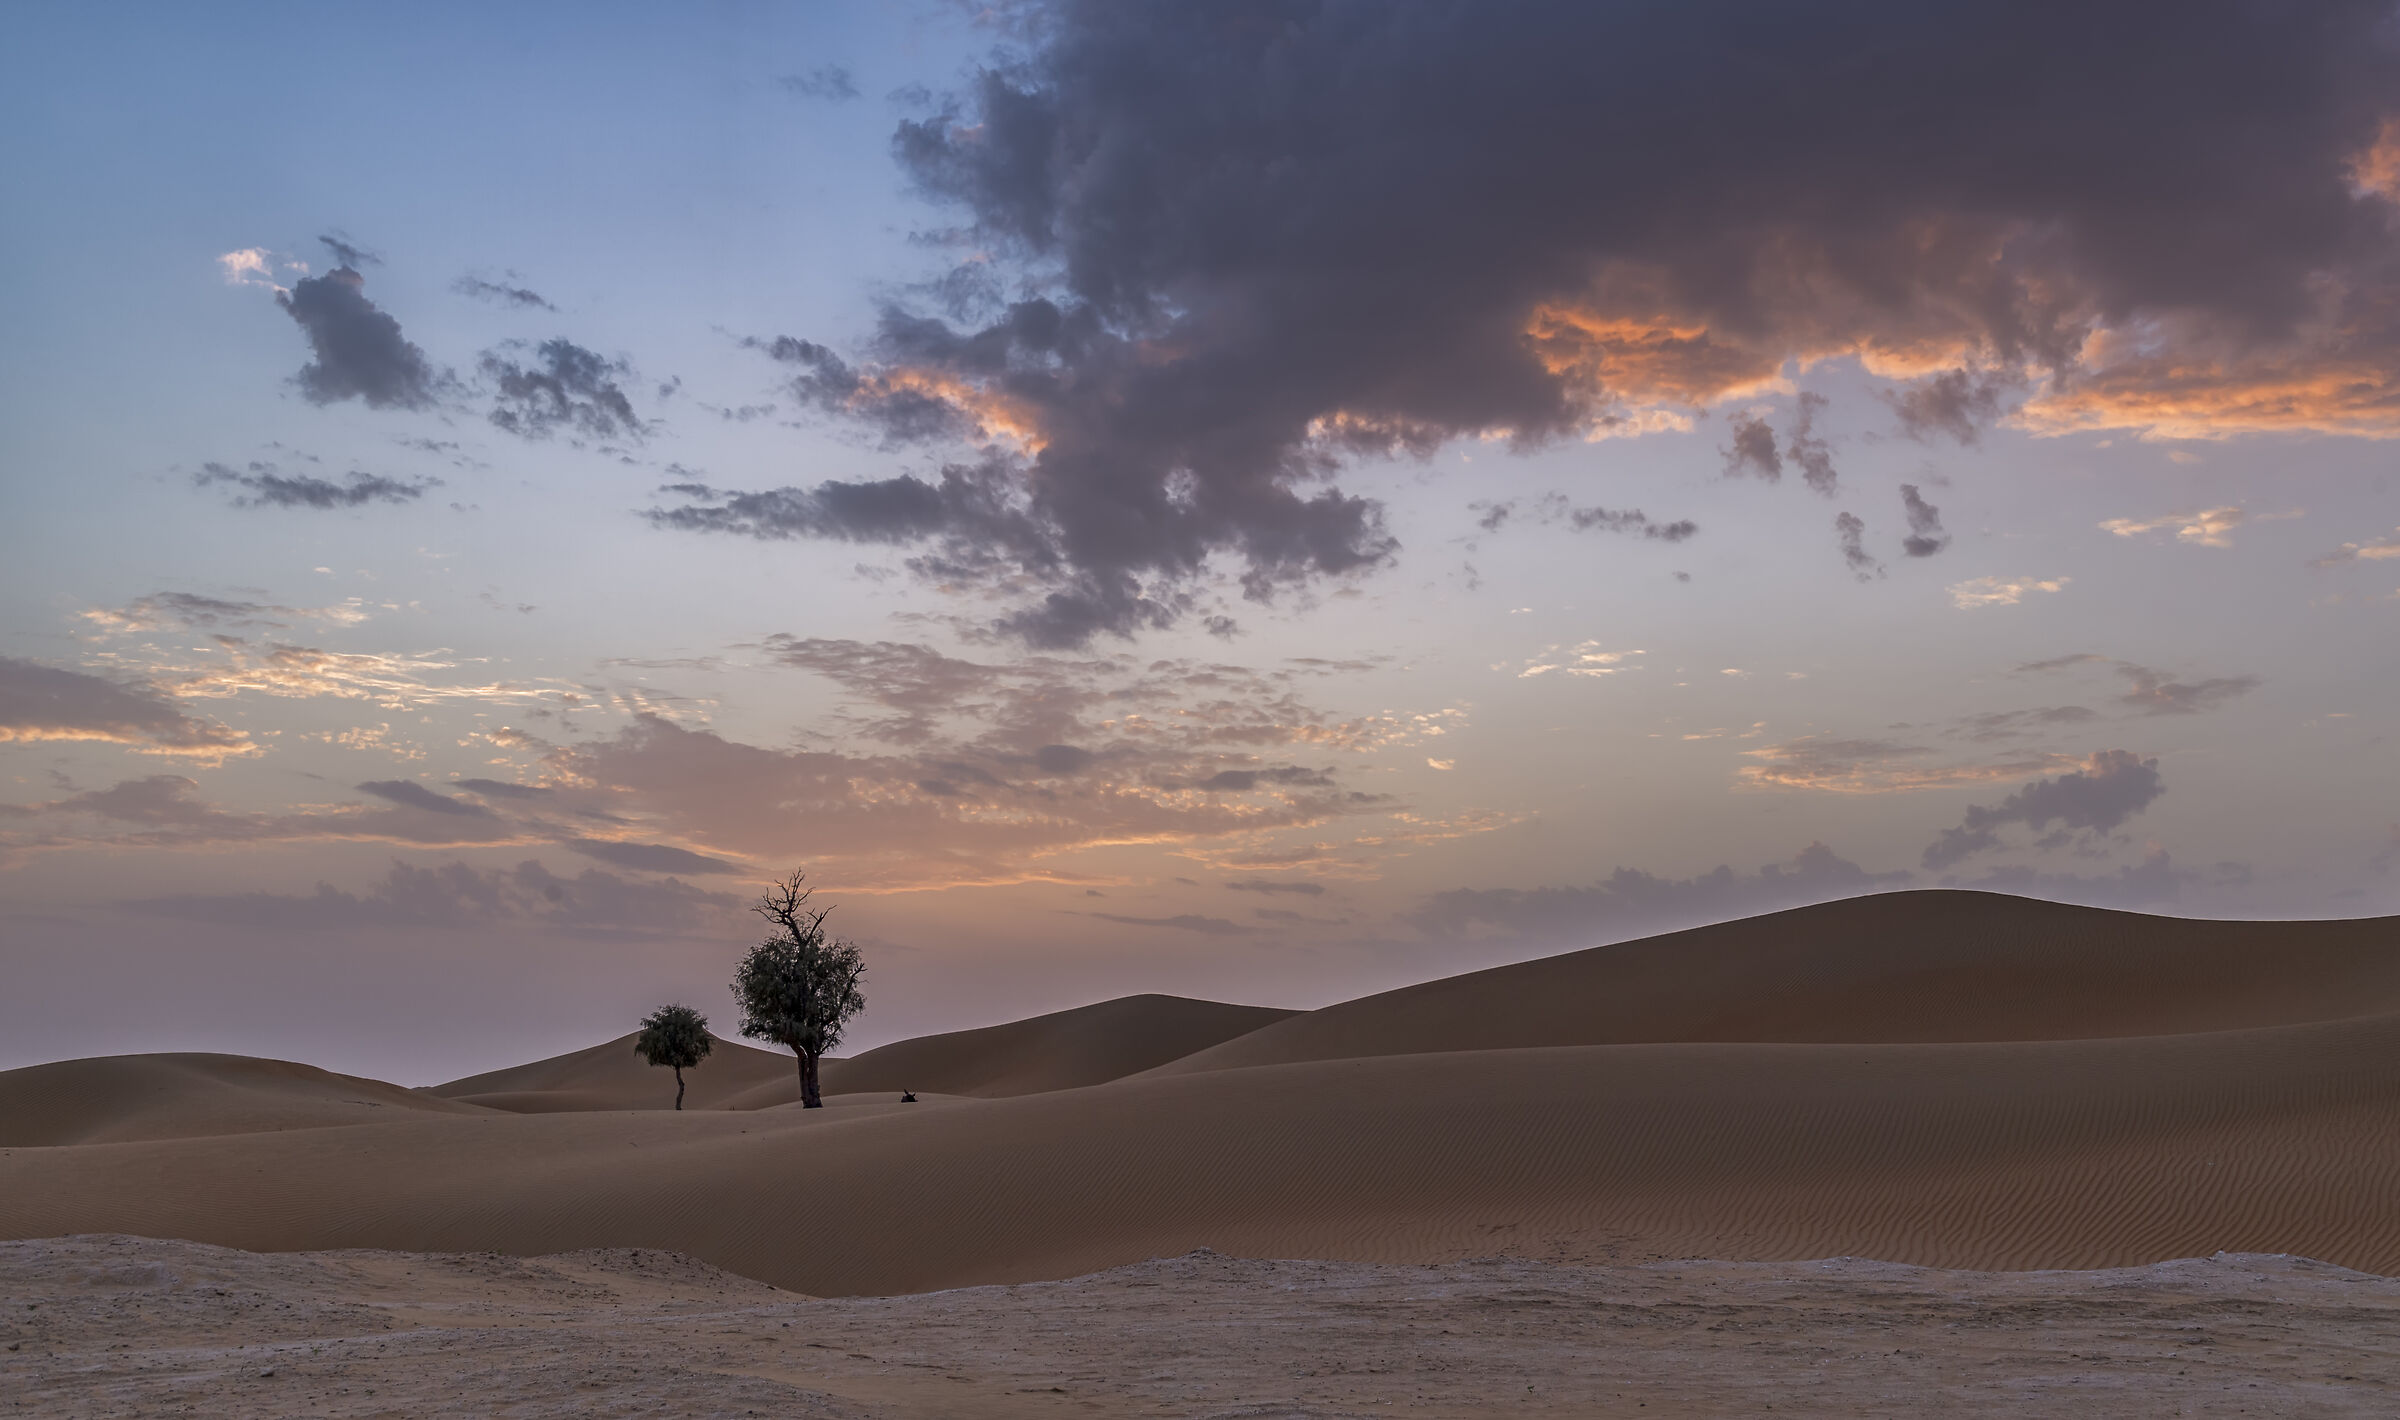 Sunset in the desert...